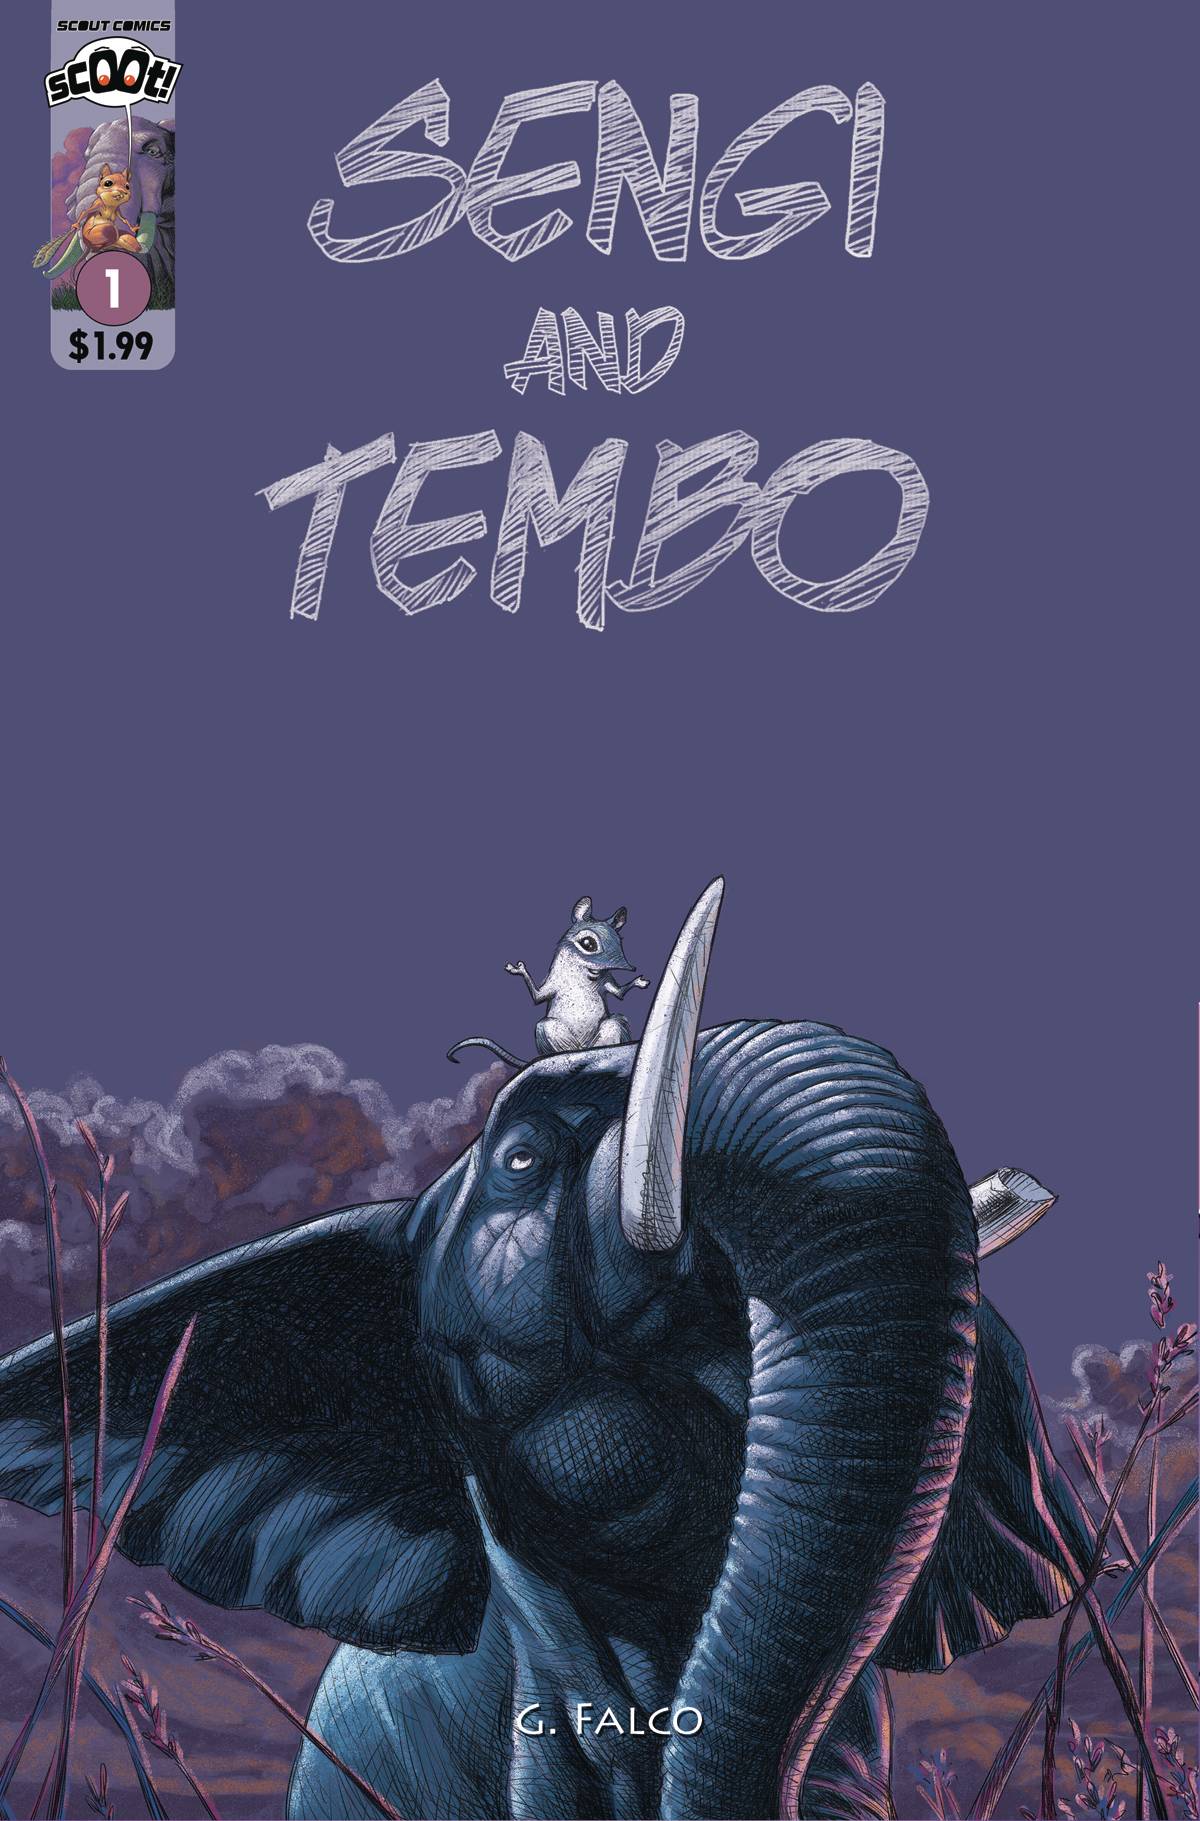 SENGI AND TEMBO #1